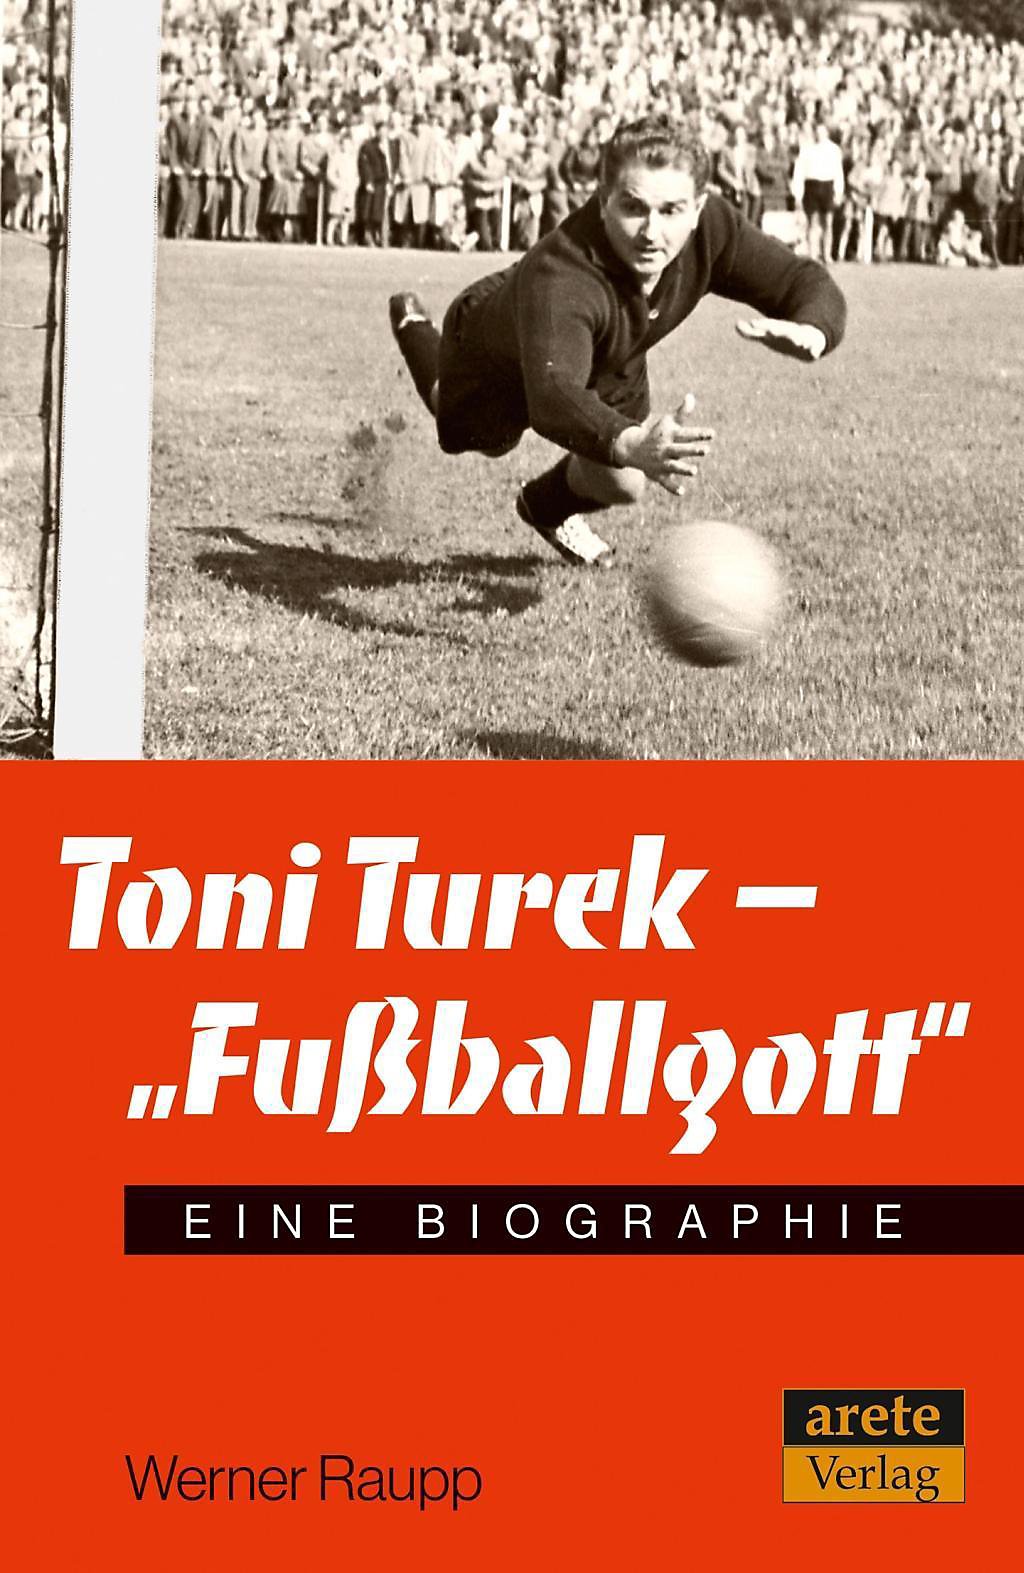 Buchcover Toni Turek - "Fußballgott" - Eine Biographie von Werner Raupp